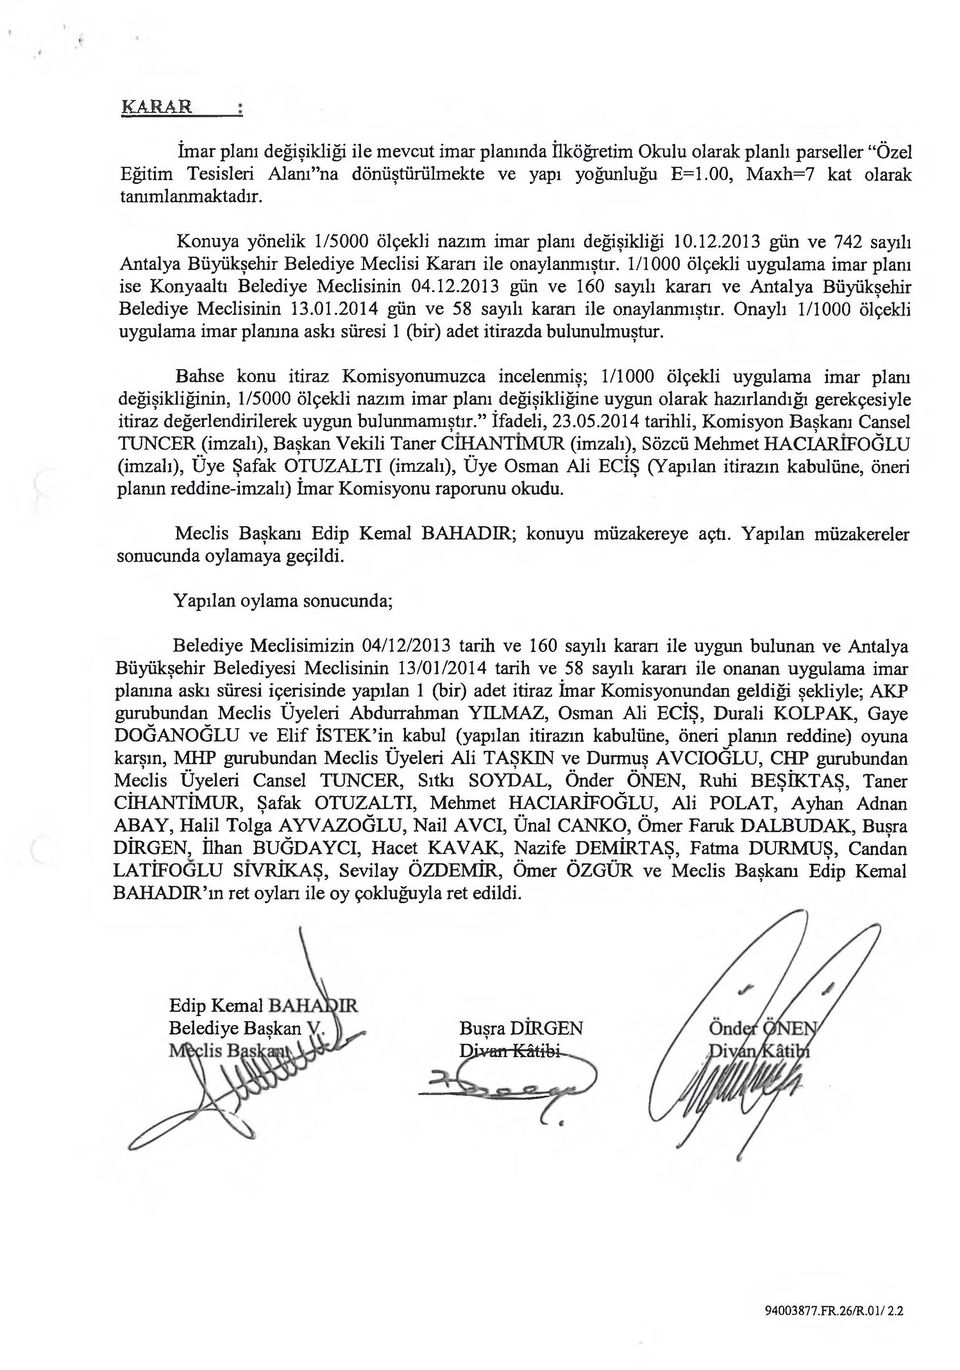 1/1000 ölçekli uygulama imar planı ise Konyaaltı Belediye Meclisinin 04.12.2013 gün ve 160 sayılı karan ve Antalya Büyükşehir Belediye Meclisinin 13.01.2014 gün ve 58 sayılı karan ile onaylanmıştır.